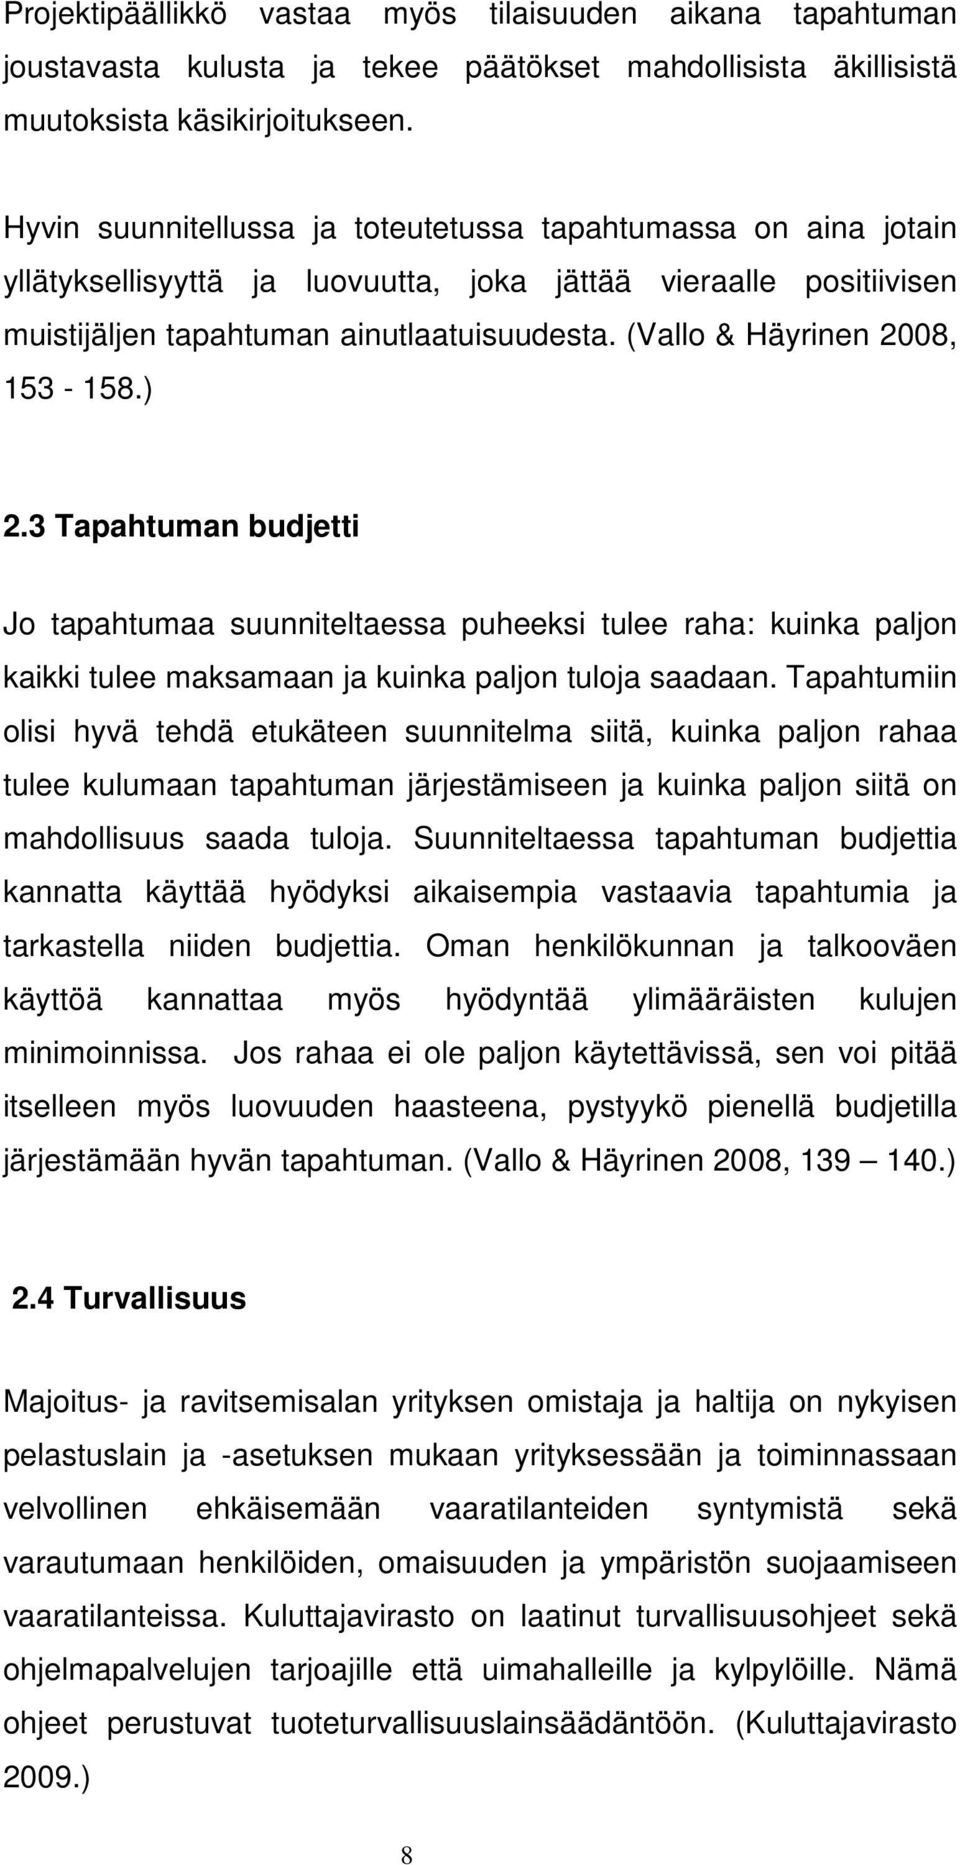 (Vallo & Häyrinen 2008, 153-158.) 2.3 Tapahtuman budjetti Jo tapahtumaa suunniteltaessa puheeksi tulee raha: kuinka paljon kaikki tulee maksamaan ja kuinka paljon tuloja saadaan.